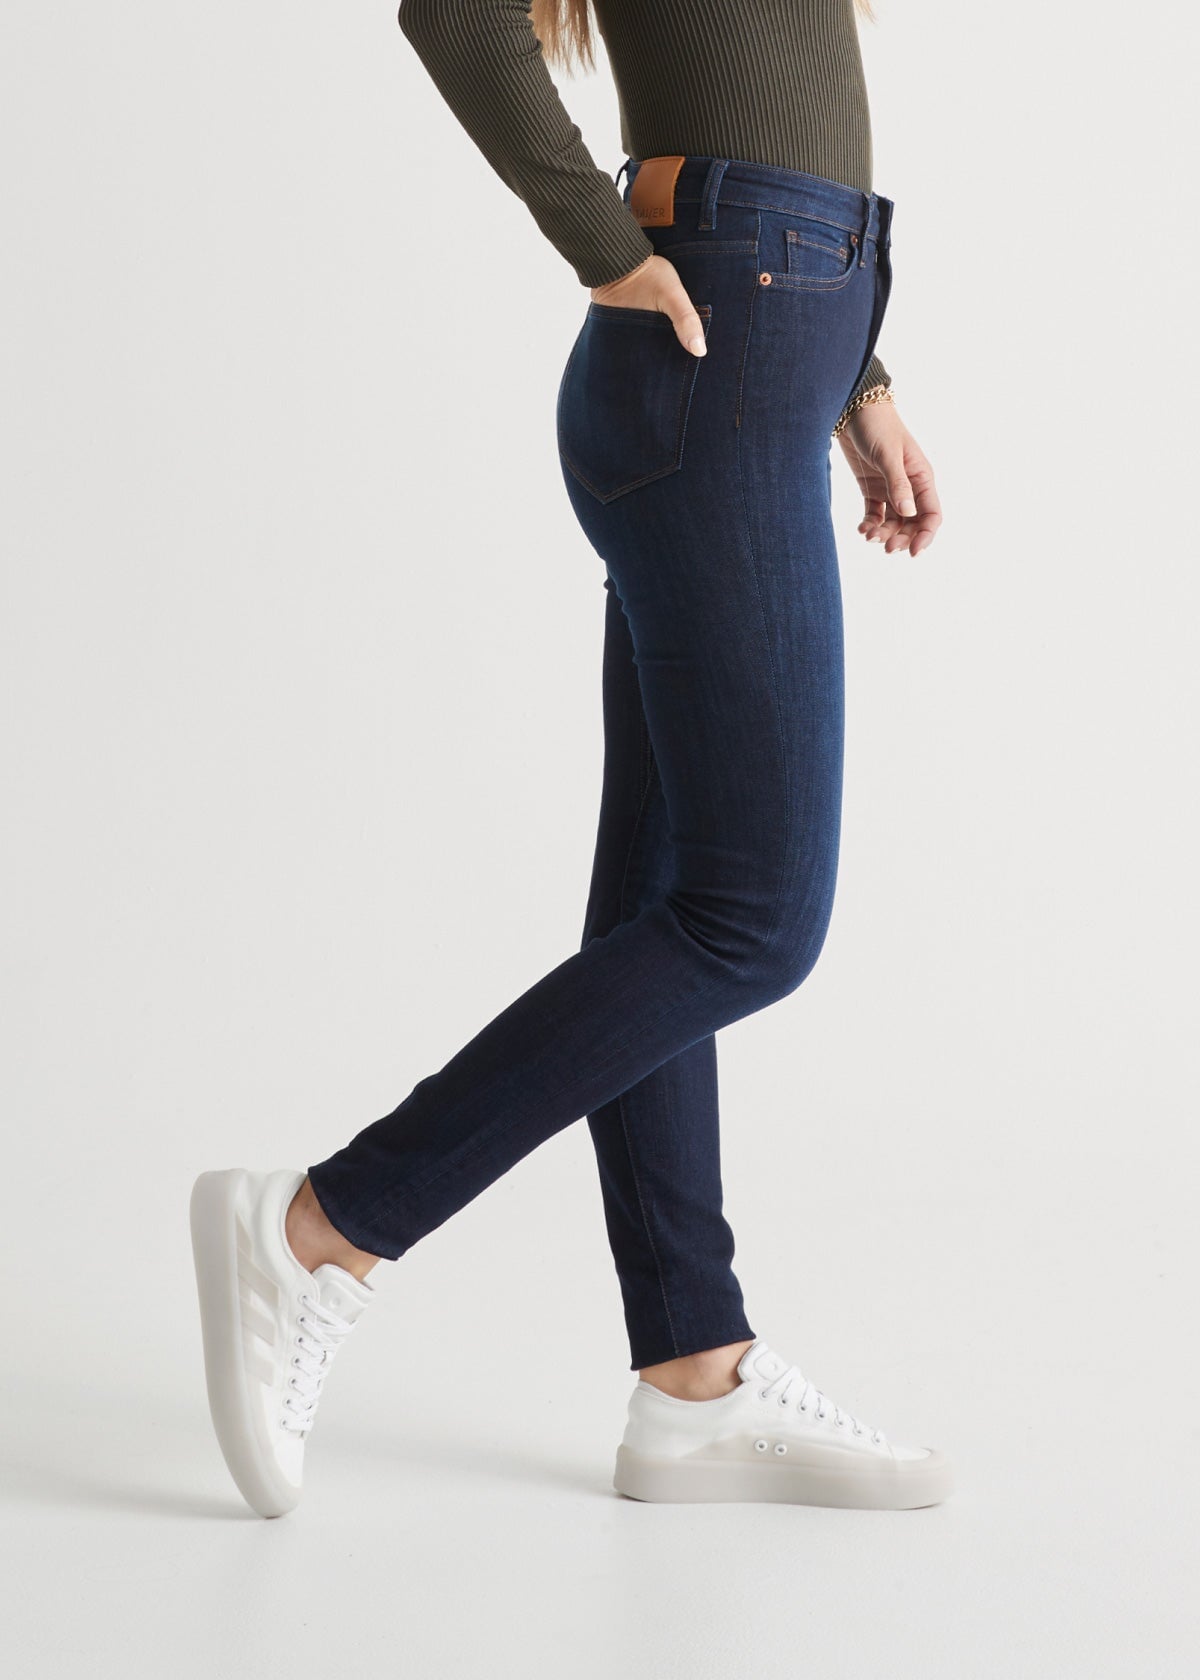 Women's Stretch Denim High Rise Bootcut Jean